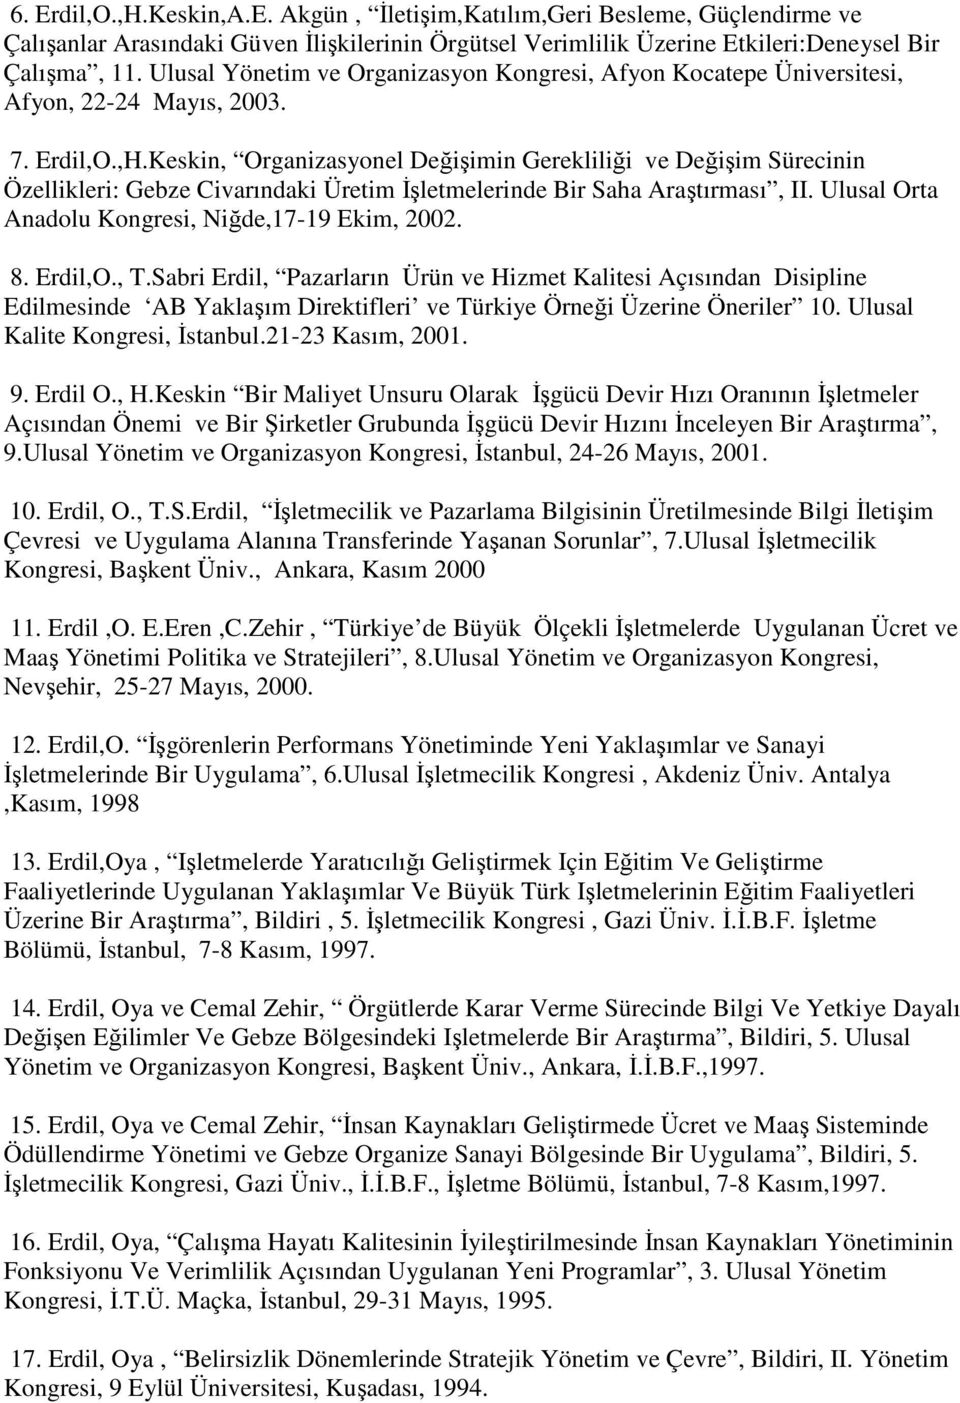 Keskin, Organizasyonel Değişimin Gerekliliği ve Değişim Sürecinin Özellikleri: Gebze Civarındaki Üretim Đşletmelerinde Bir Saha Araştırması, II. Ulusal Orta Anadolu Kongresi, Niğde,17-19 Ekim, 2002.